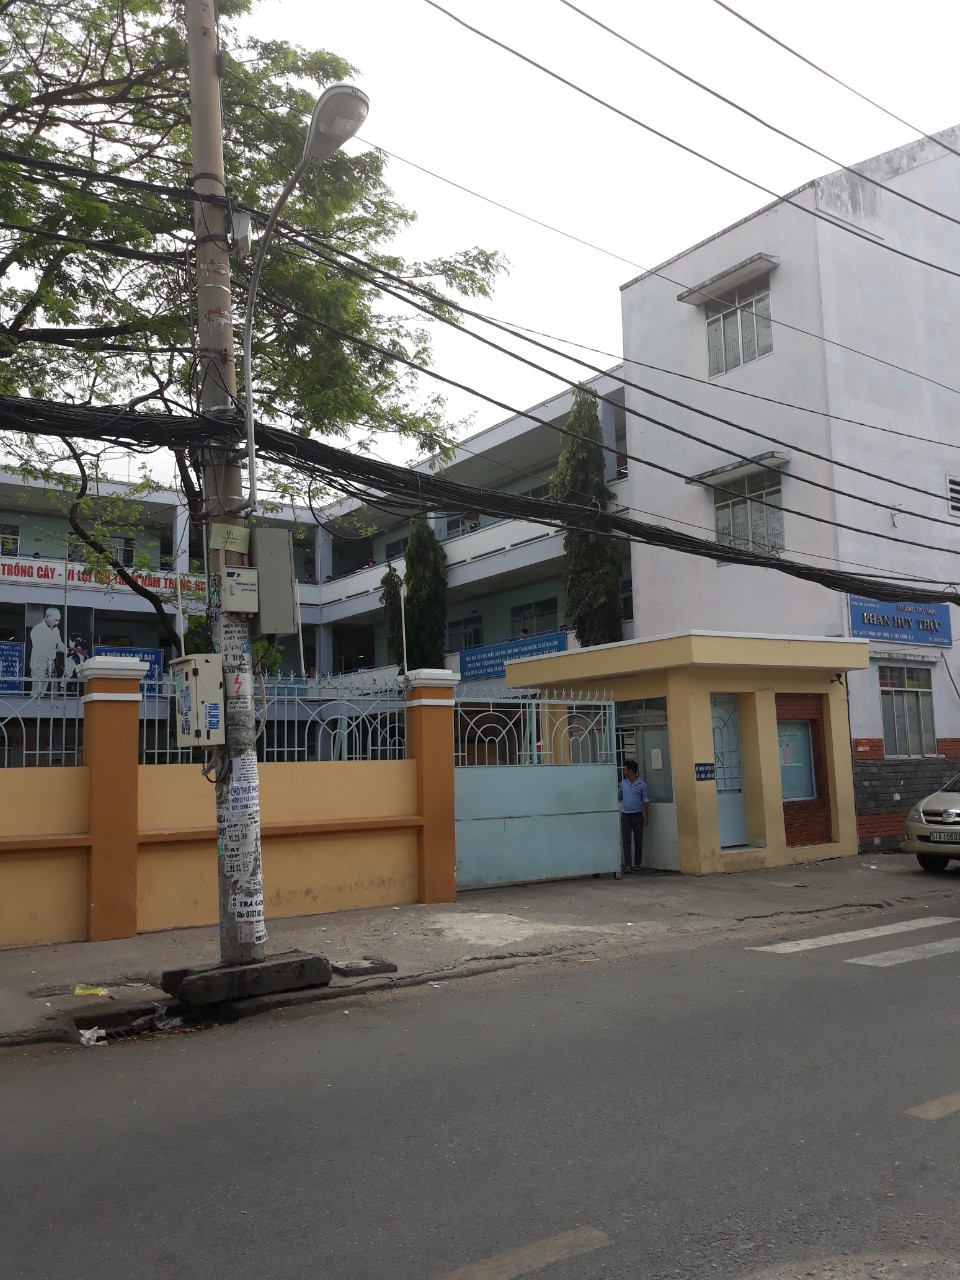 Bán nhà Q7 không lộ giới, mặt tiền đường Phan Huy Thực, P. Tân Kiểng